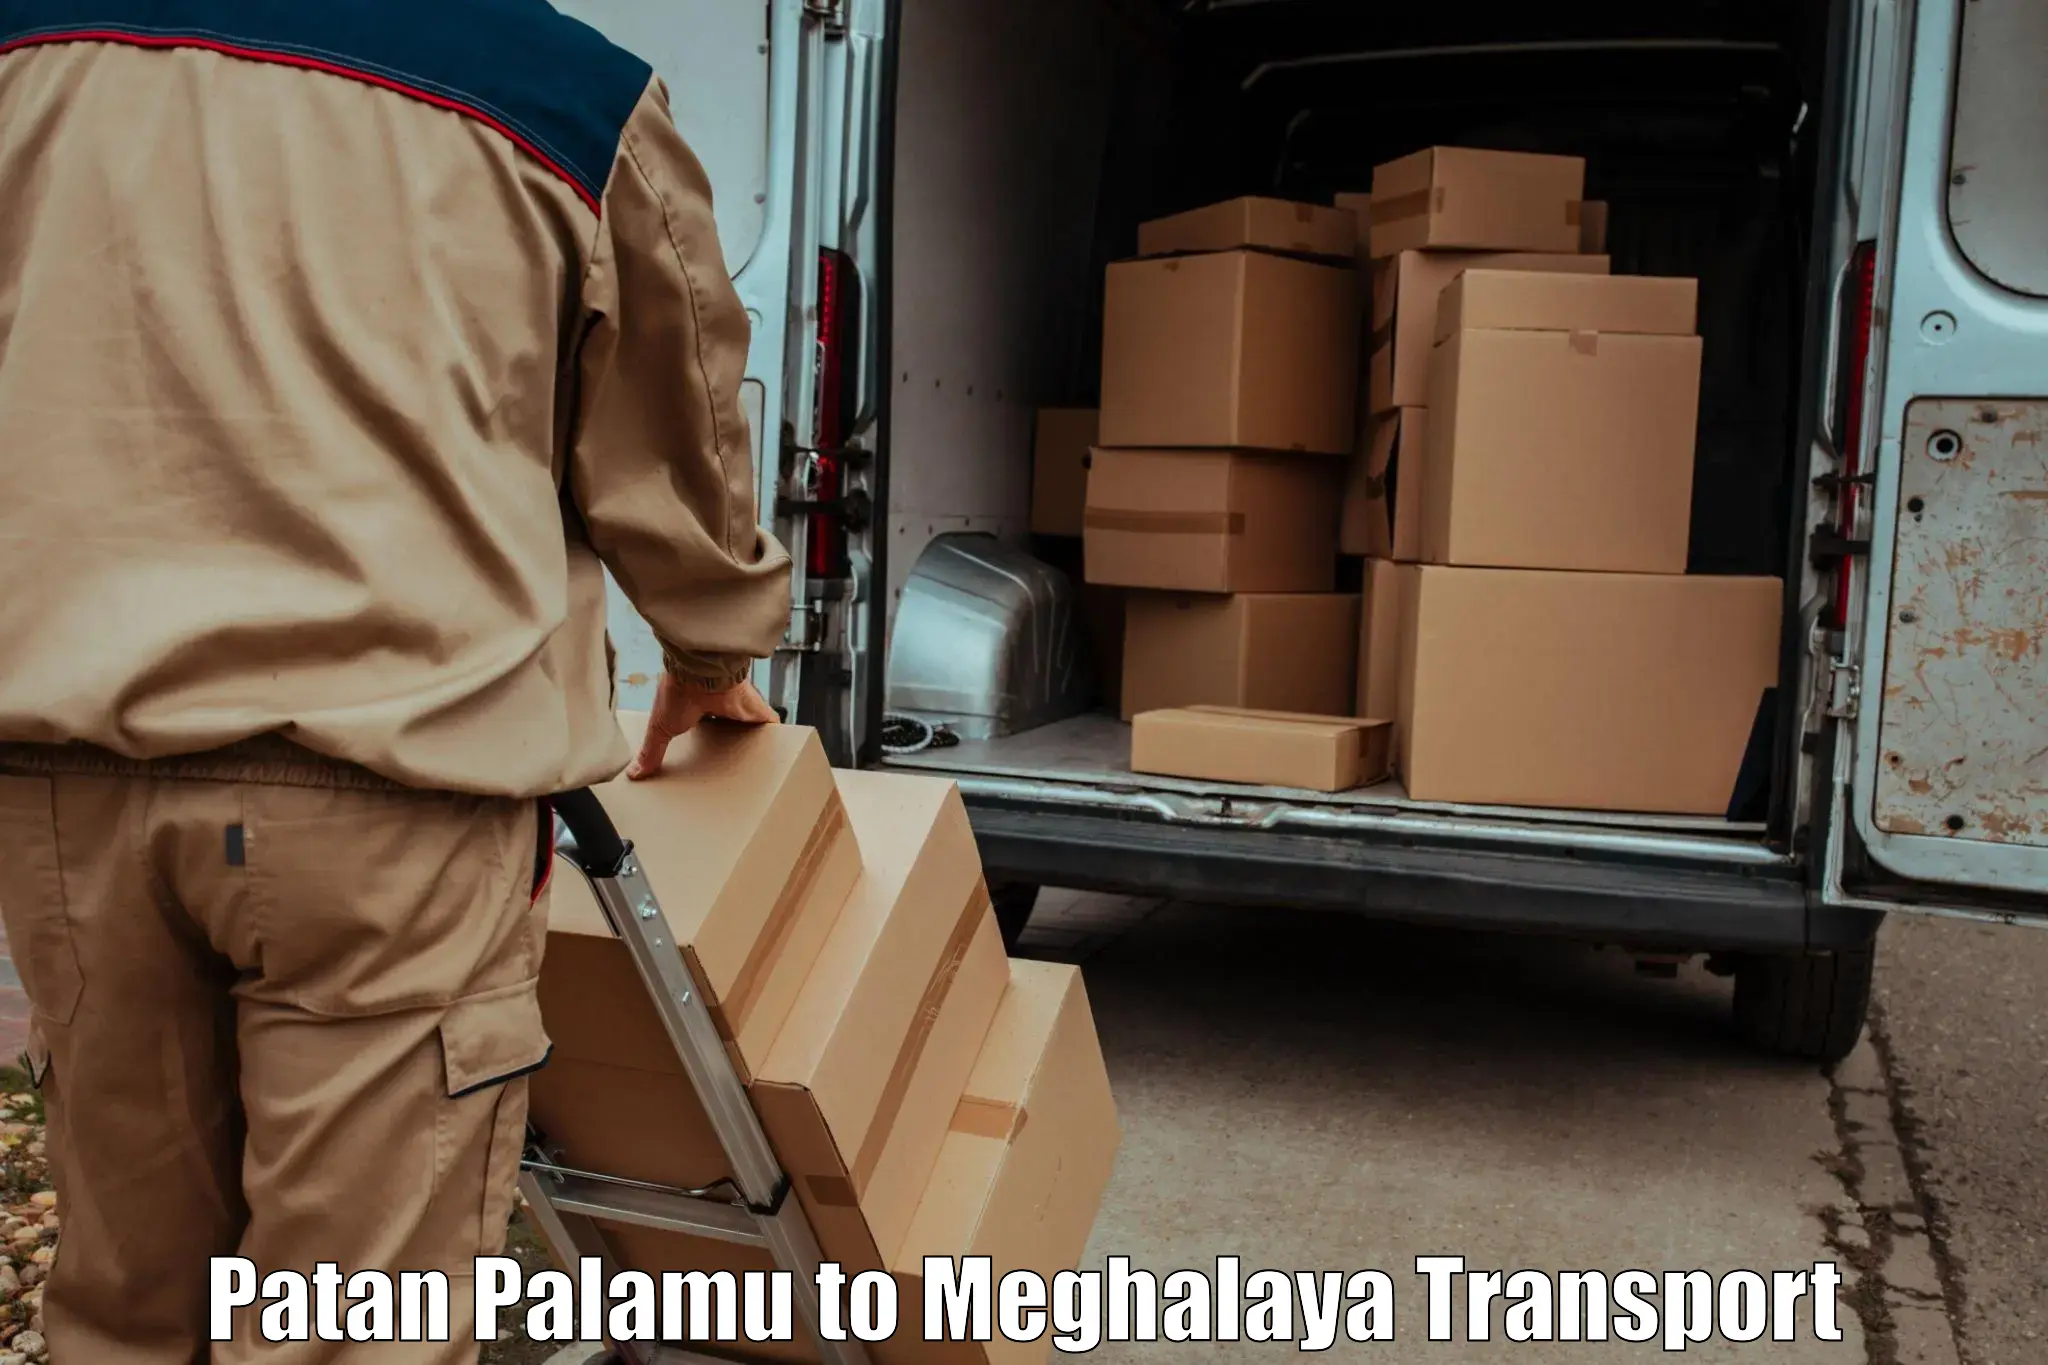 Vehicle transport services Patan Palamu to Meghalaya